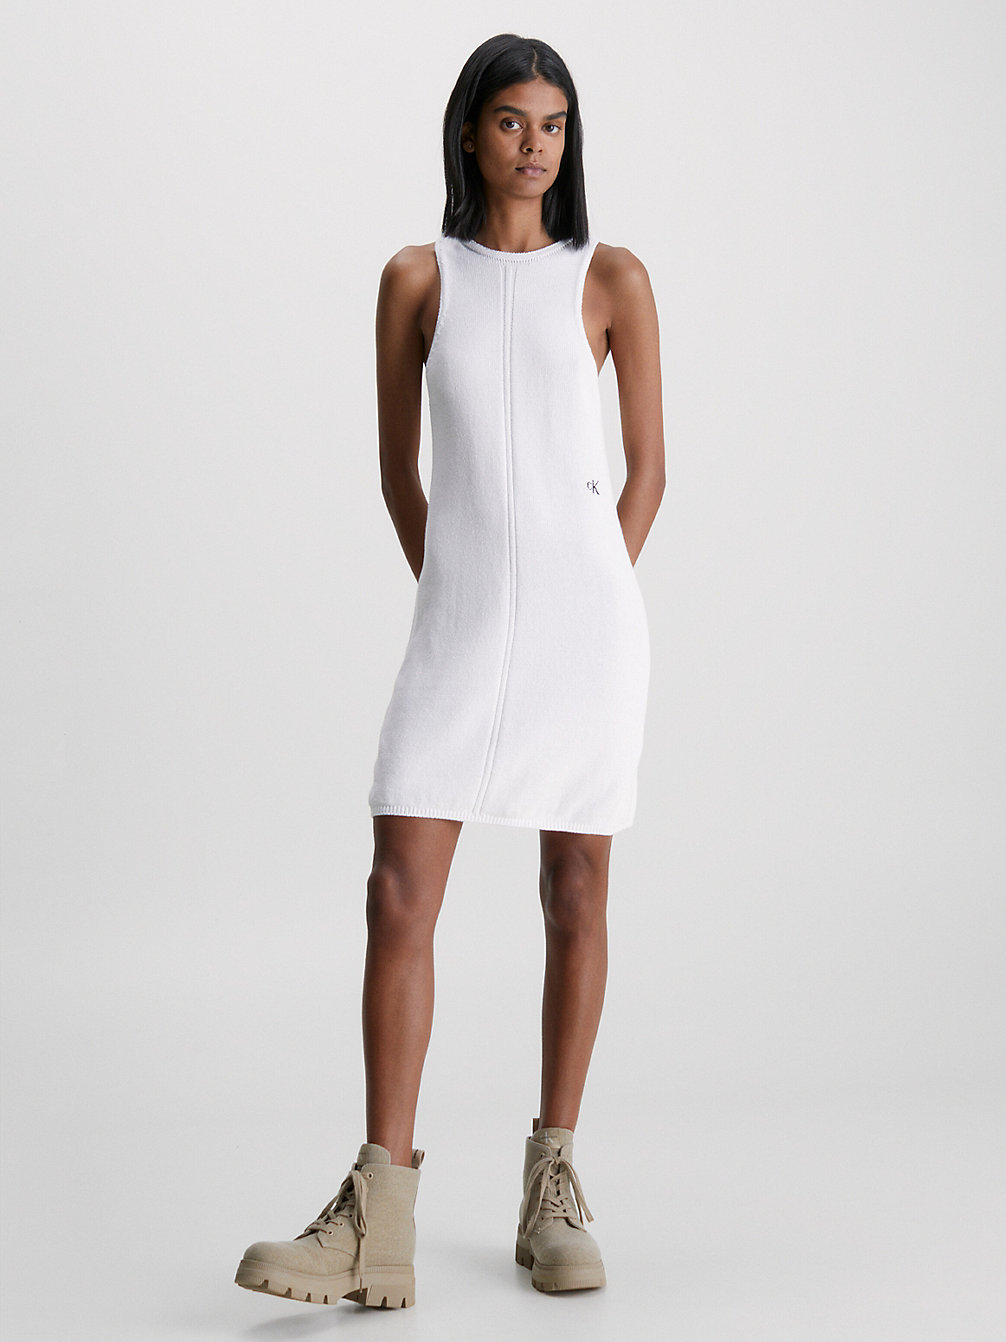 BRIGHT WHITE Cotton Knit Tank Dress undefined women Calvin Klein